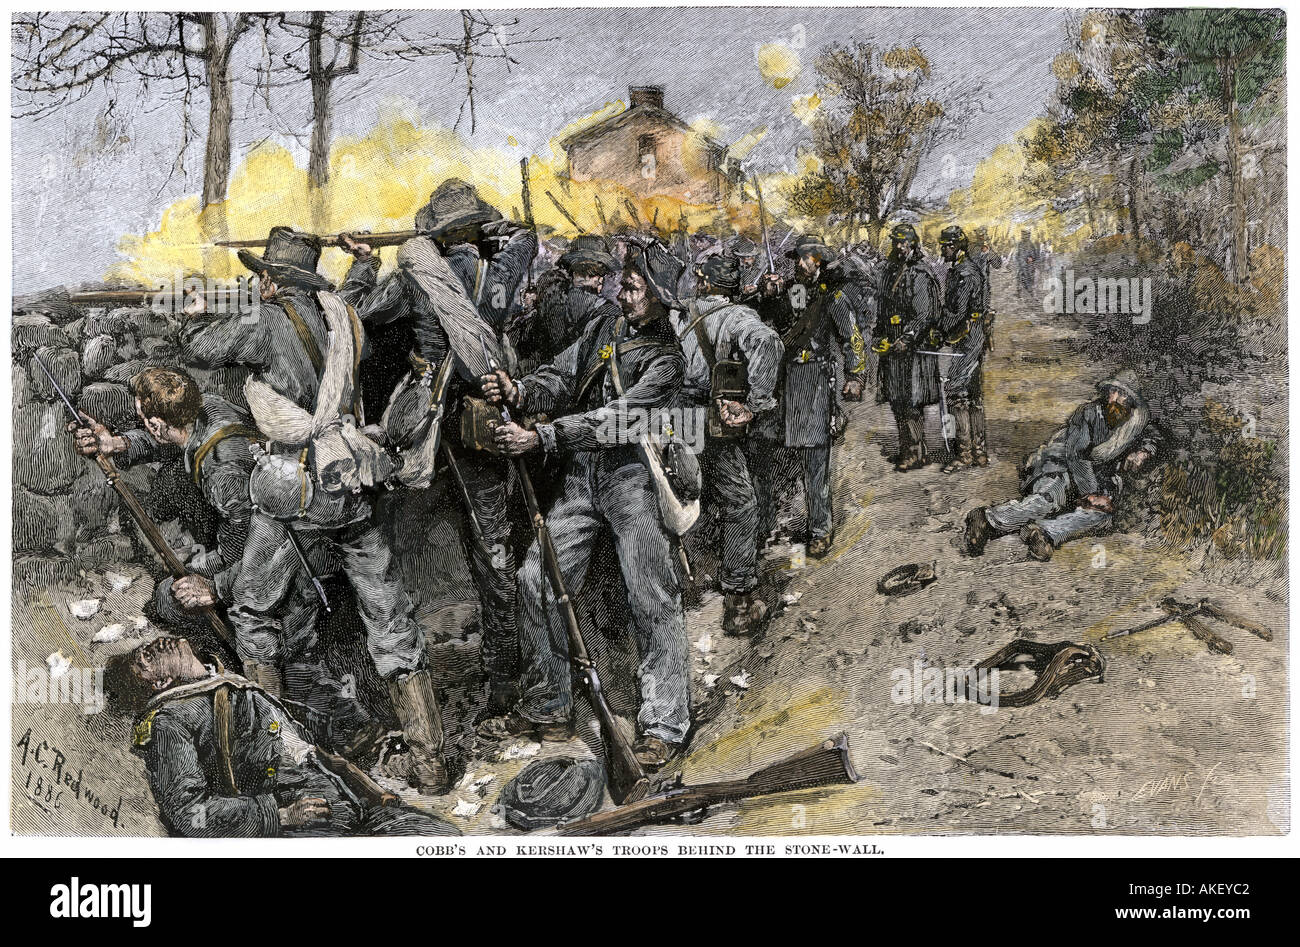 Truppe confederate dietro un muro di pietra per difendere Fredericksburg Virginia 1862 Guerra civile americana. Colorate a mano la xilografia Foto Stock